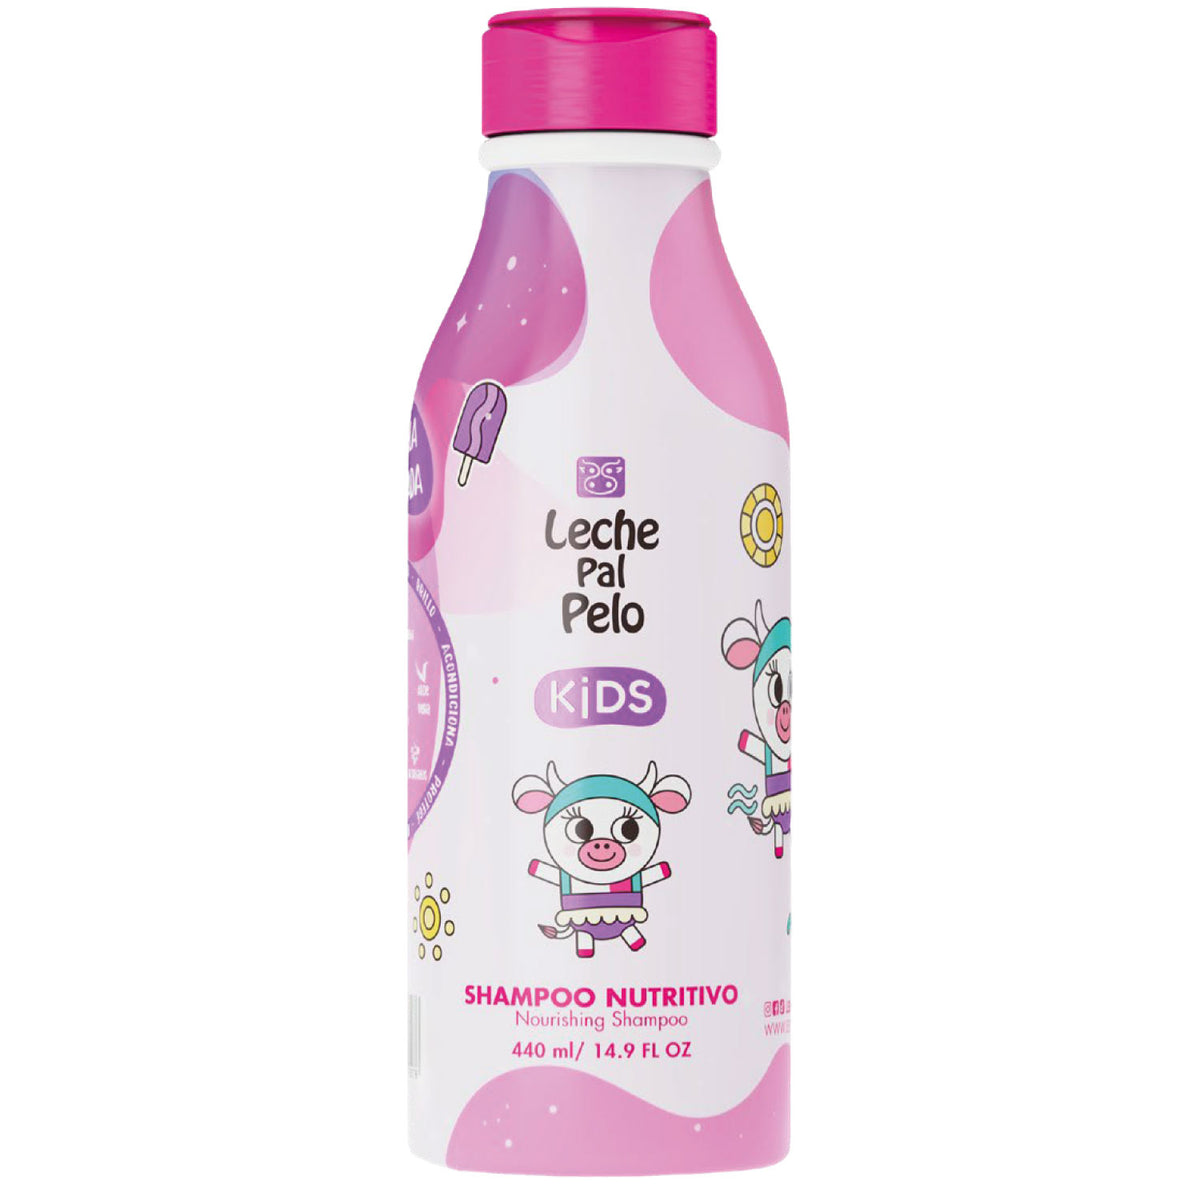 Kids Shampoo Nutritivo Leche Pal Pelo